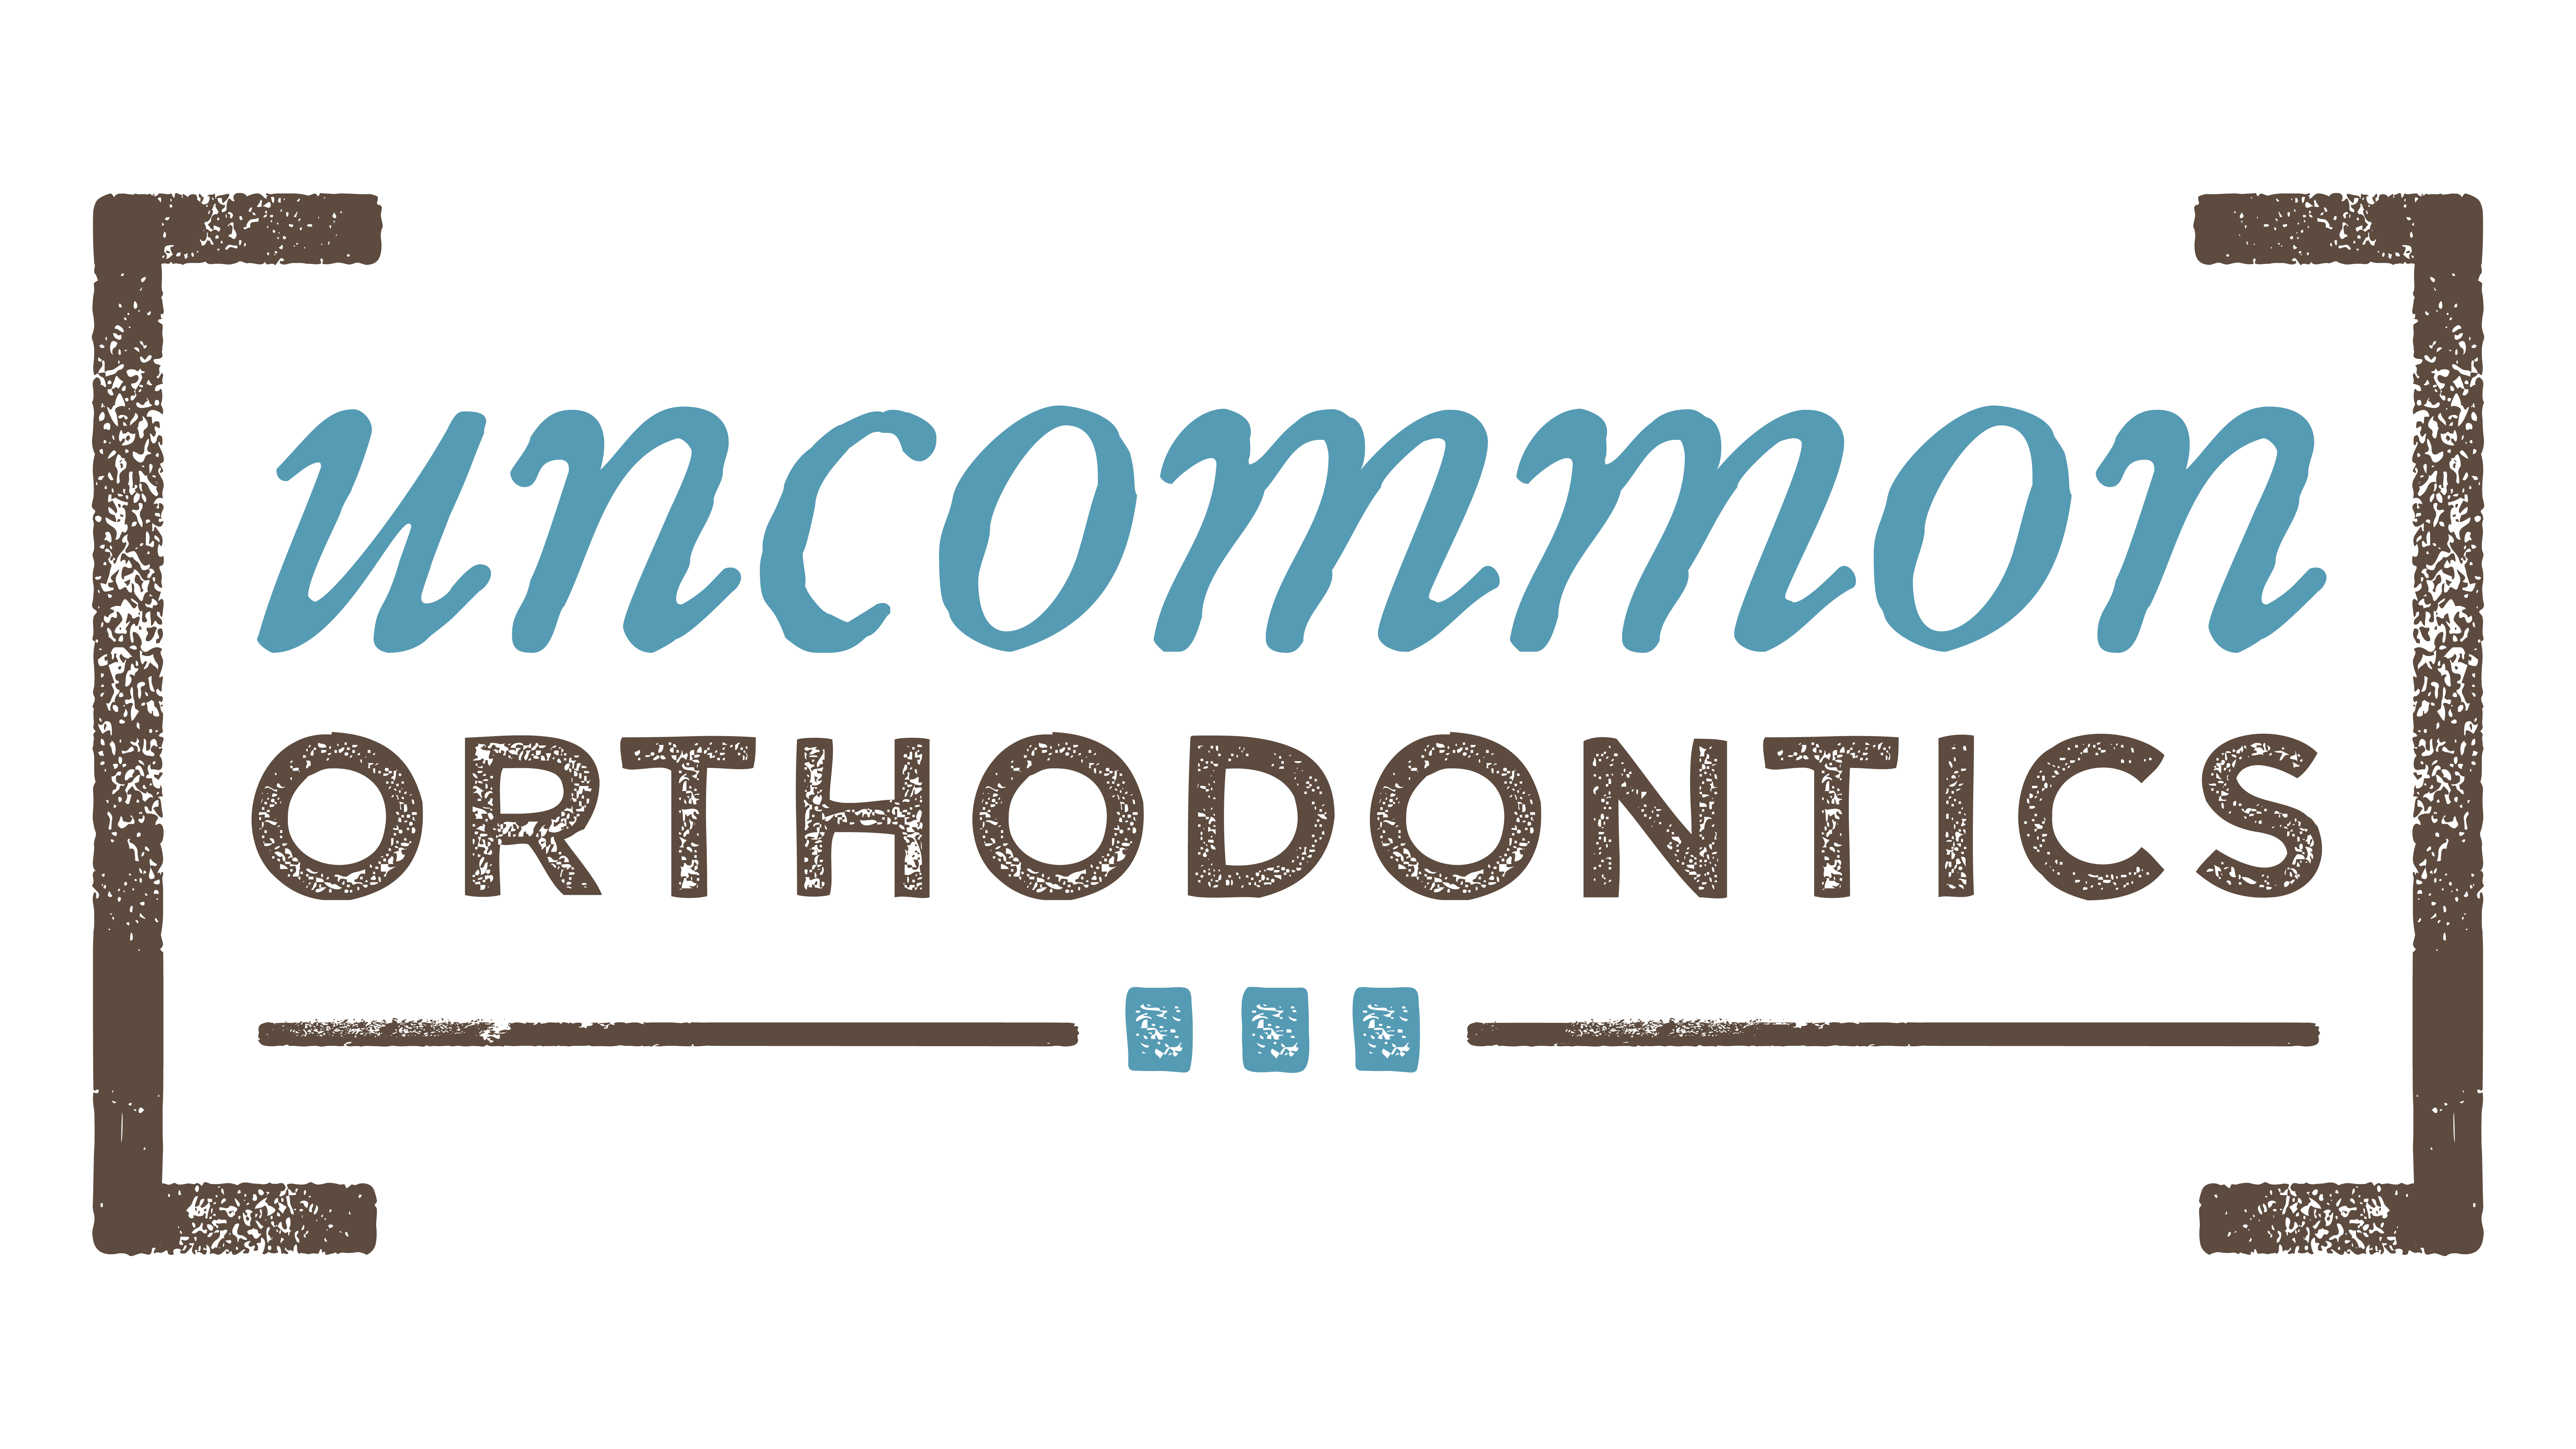 Uncommon Orthodontics Logo